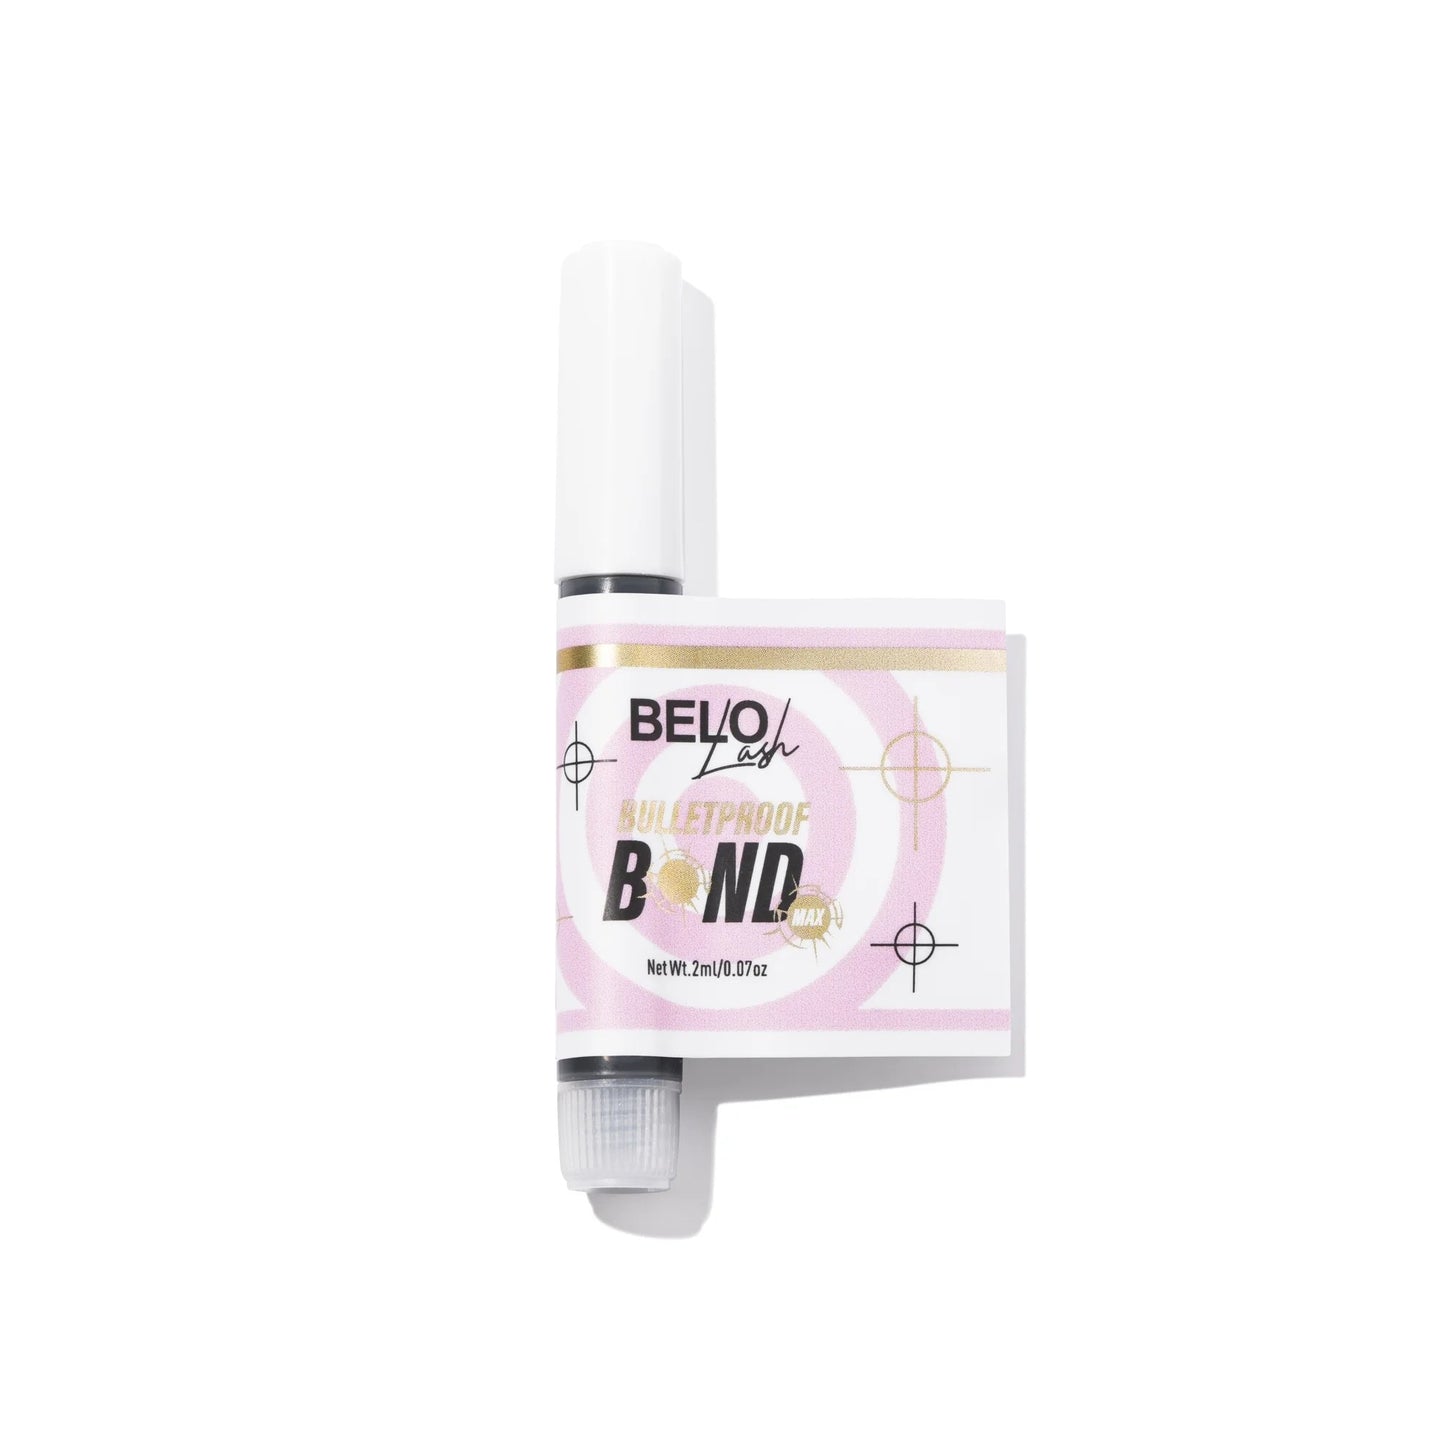 BELO Lash Bulletproof Max Adhesive - with package unravelled